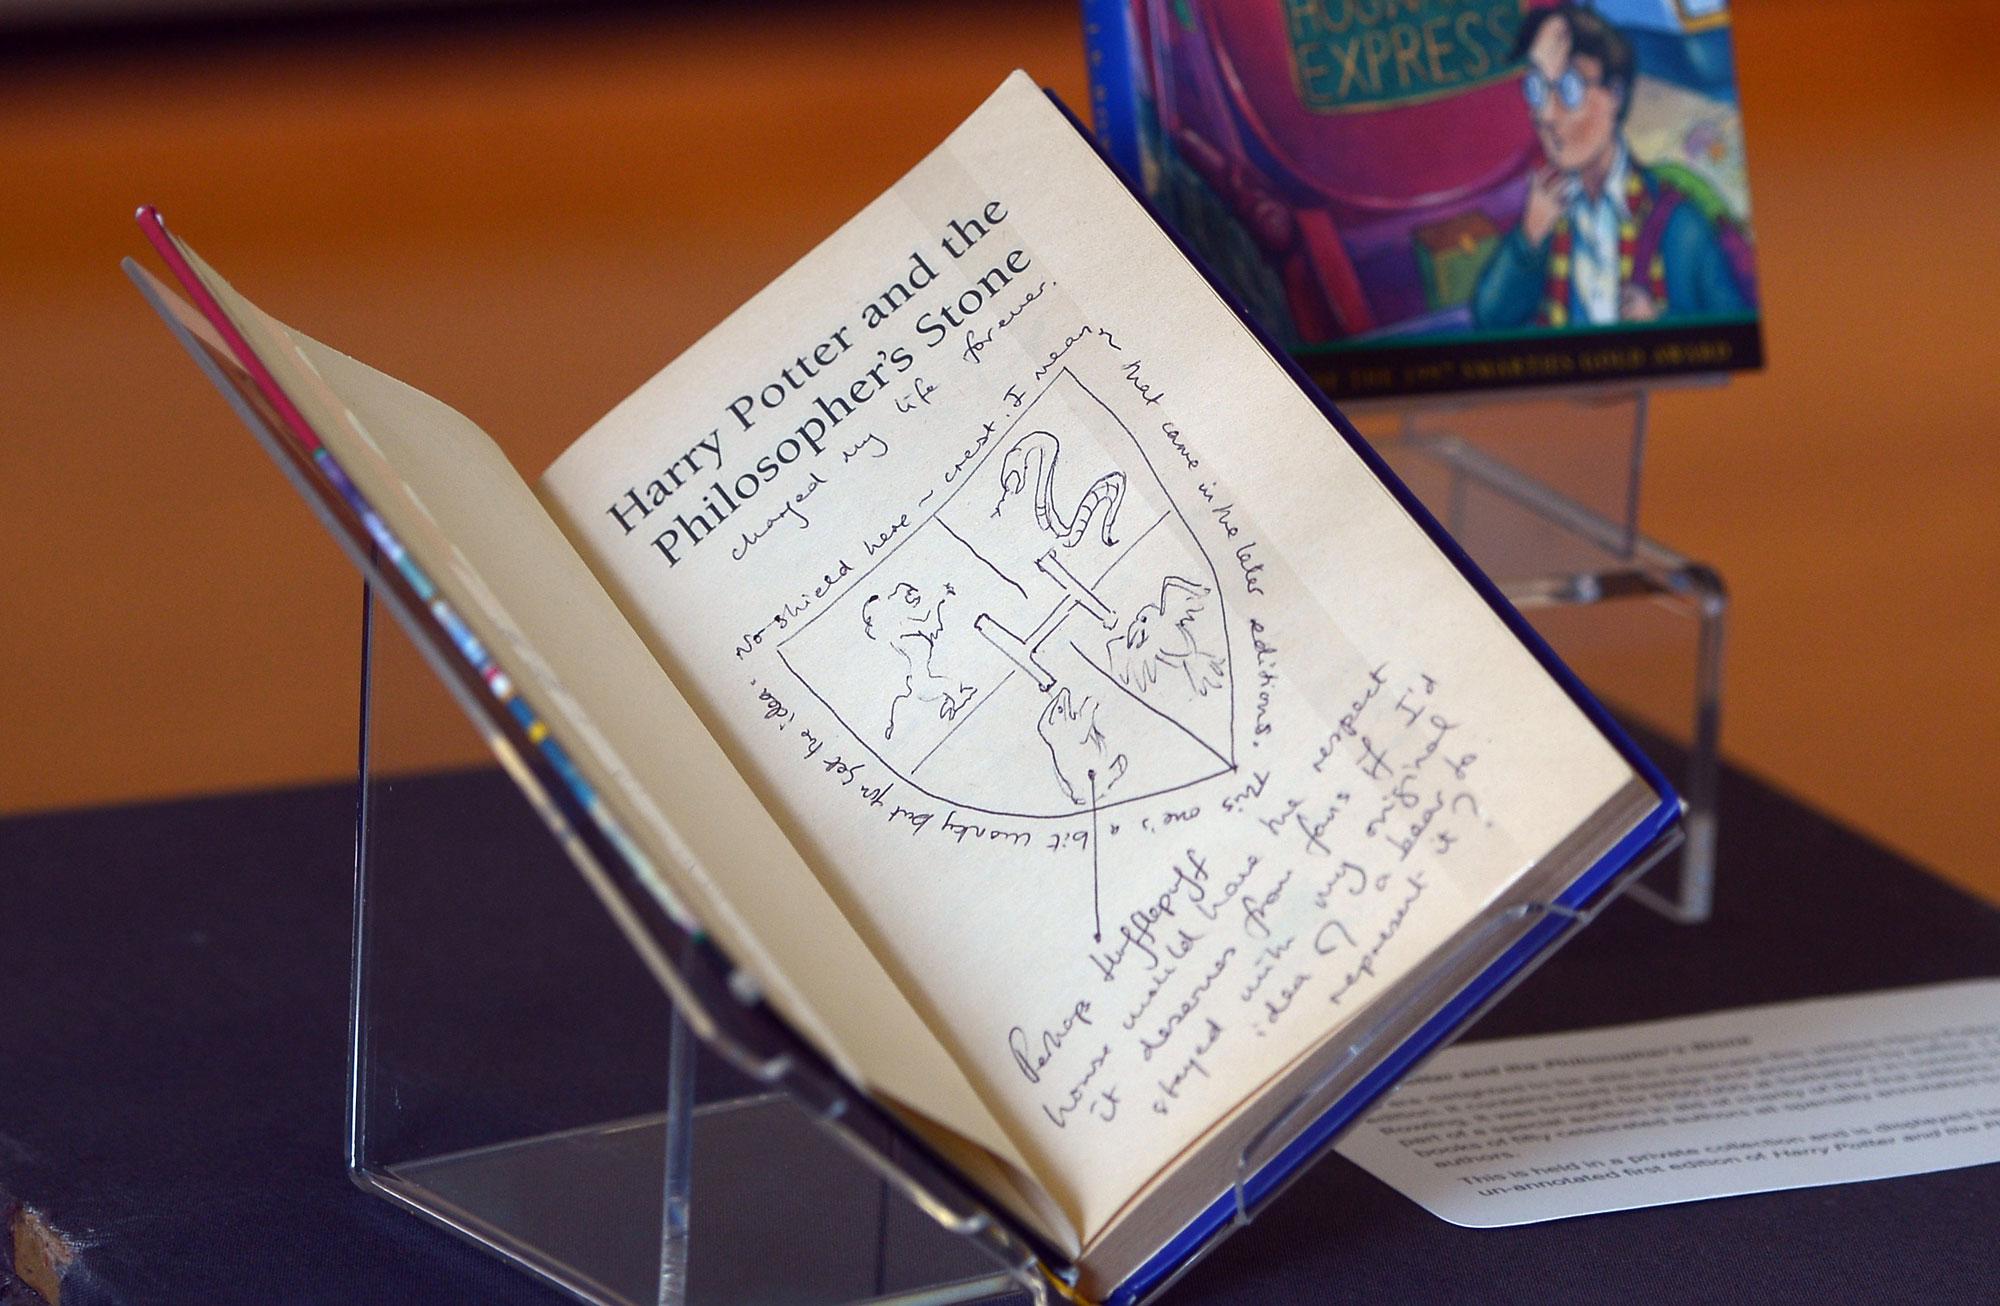 Les notes de J.K. Rowling dans la première édition de "Harry Potter and the Philosopher's Stone", ouvrage exposé à Edimbourg en 2017. [AFP - Neil Hanna]